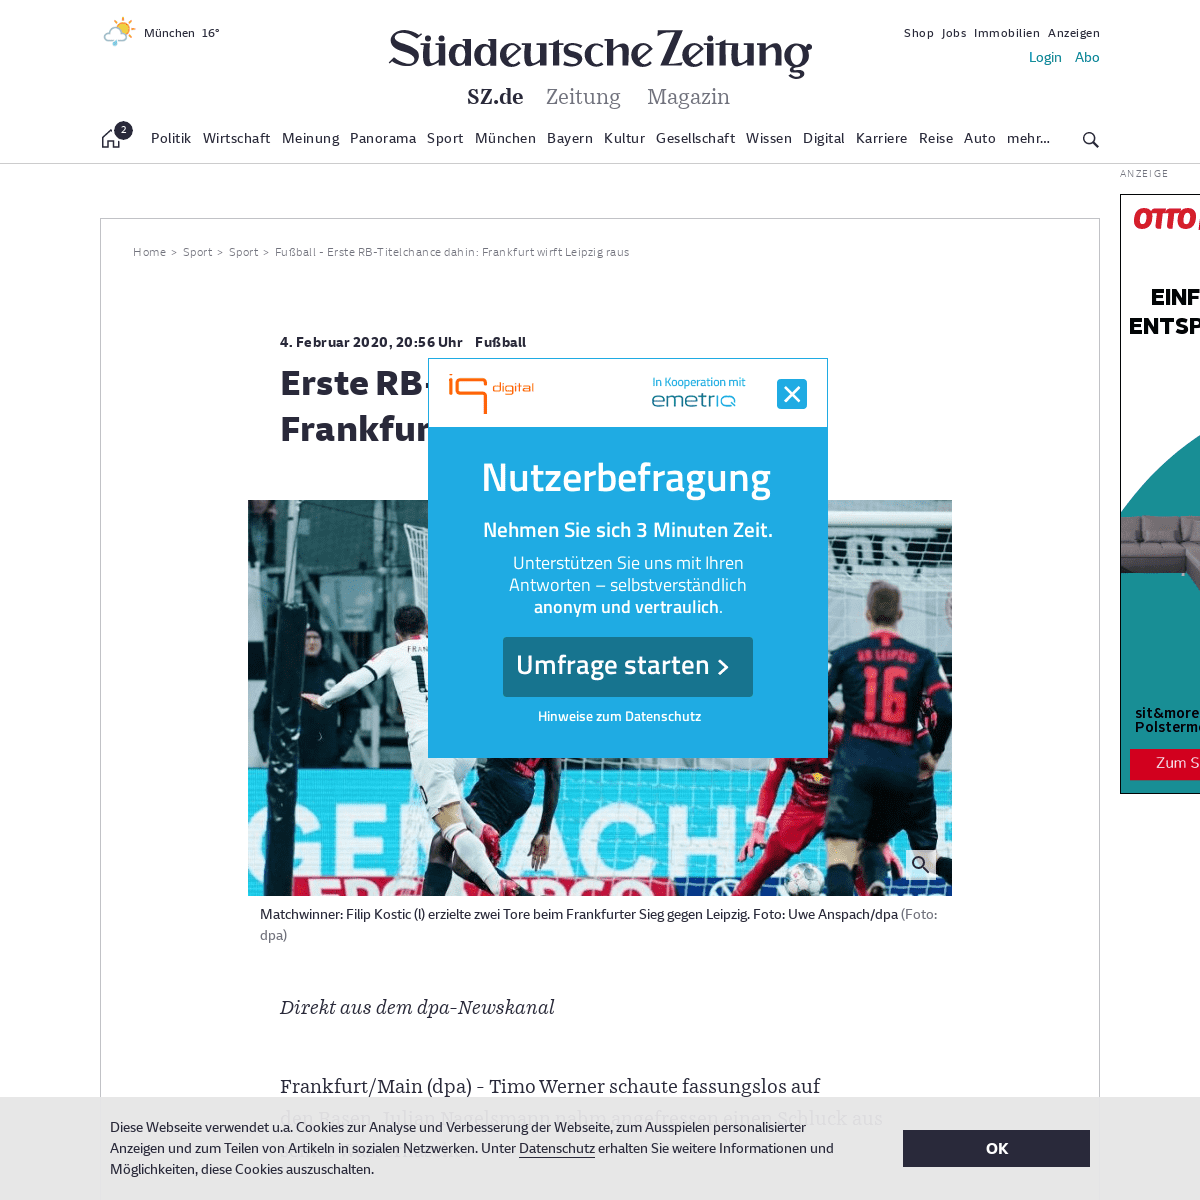 A complete backup of www.sueddeutsche.de/sport/fussball-erste-rb-titelchance-dahin-frankfurt-wirft-leipzig-raus-dpa.urn-newsml-d